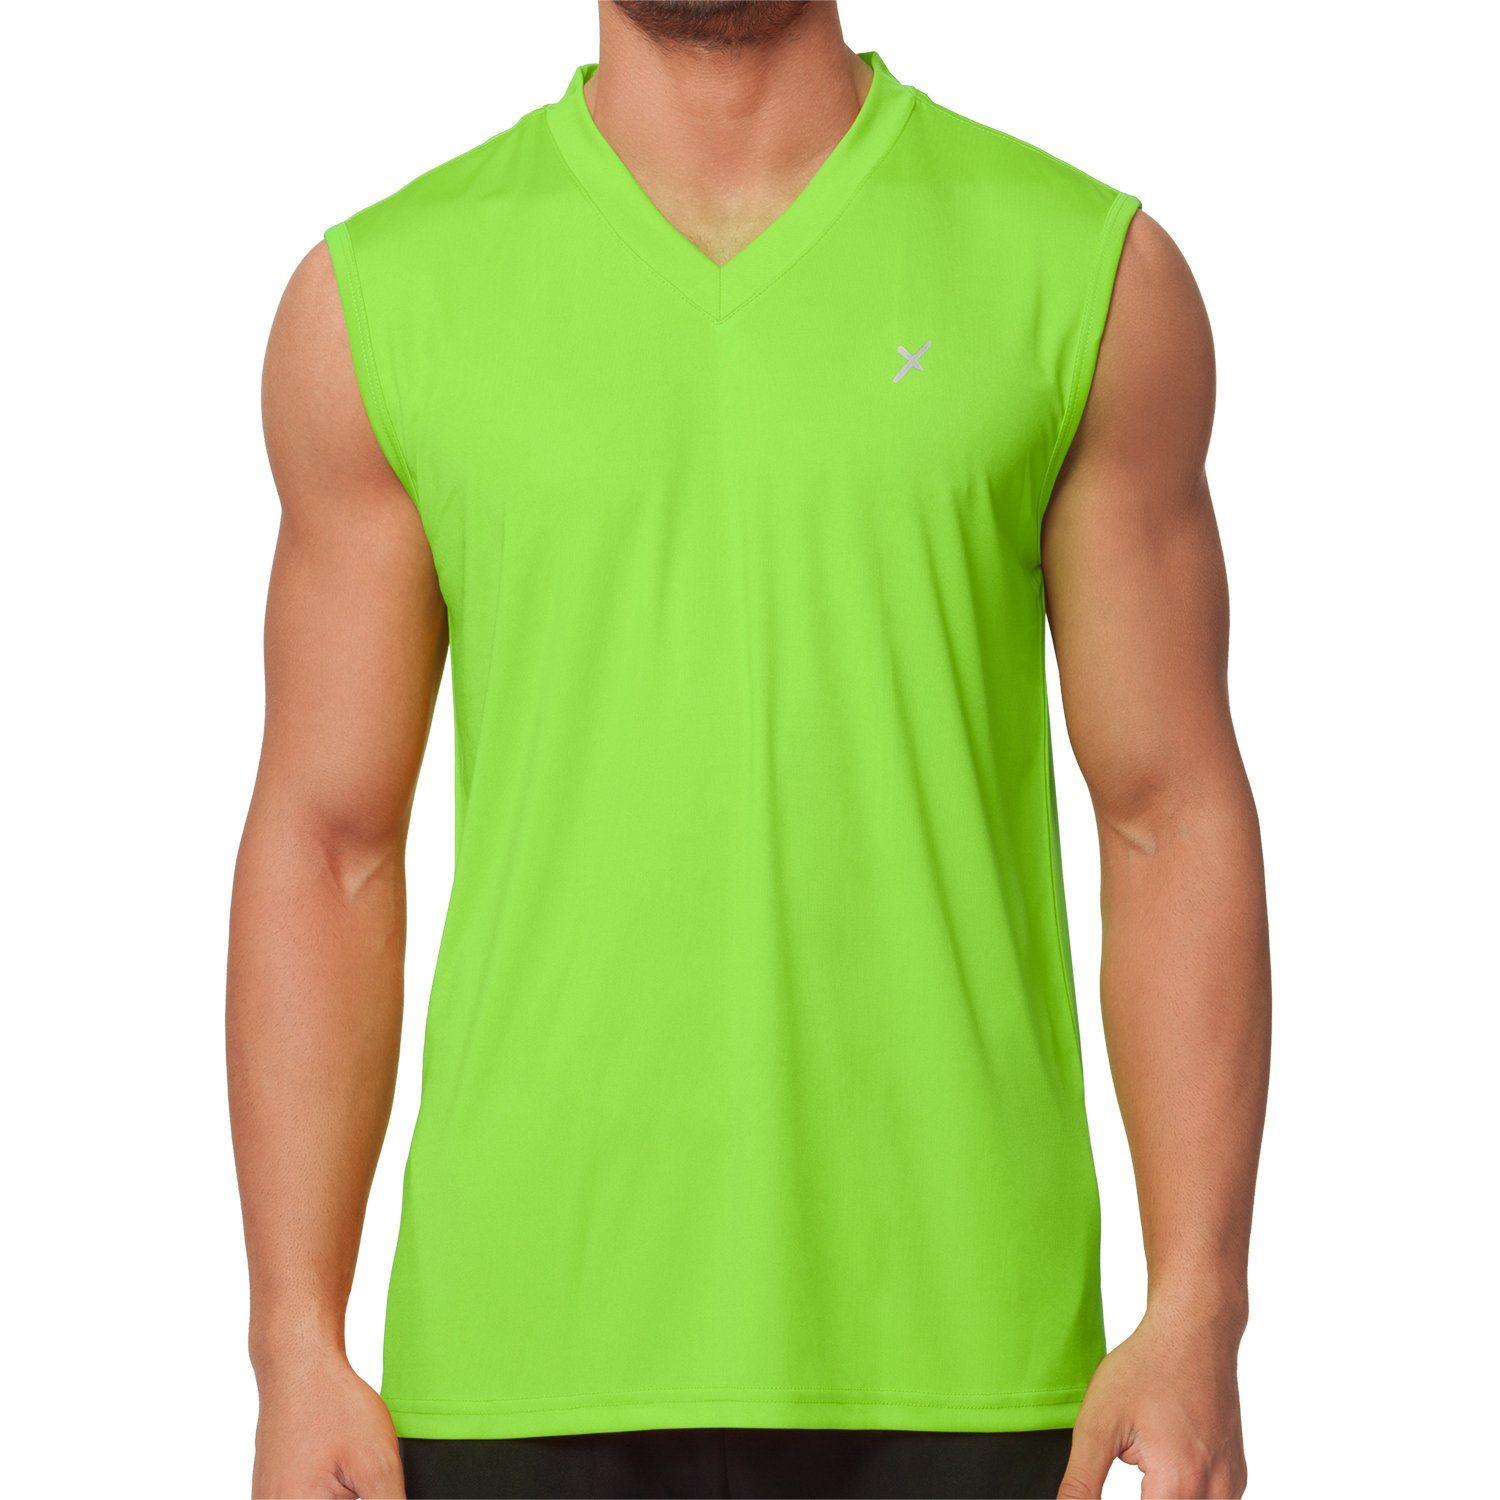 CFLEX Trainingsshirt Herren Sport Shirt Fitness Muscle-Shirt Sportswear Collection Grün